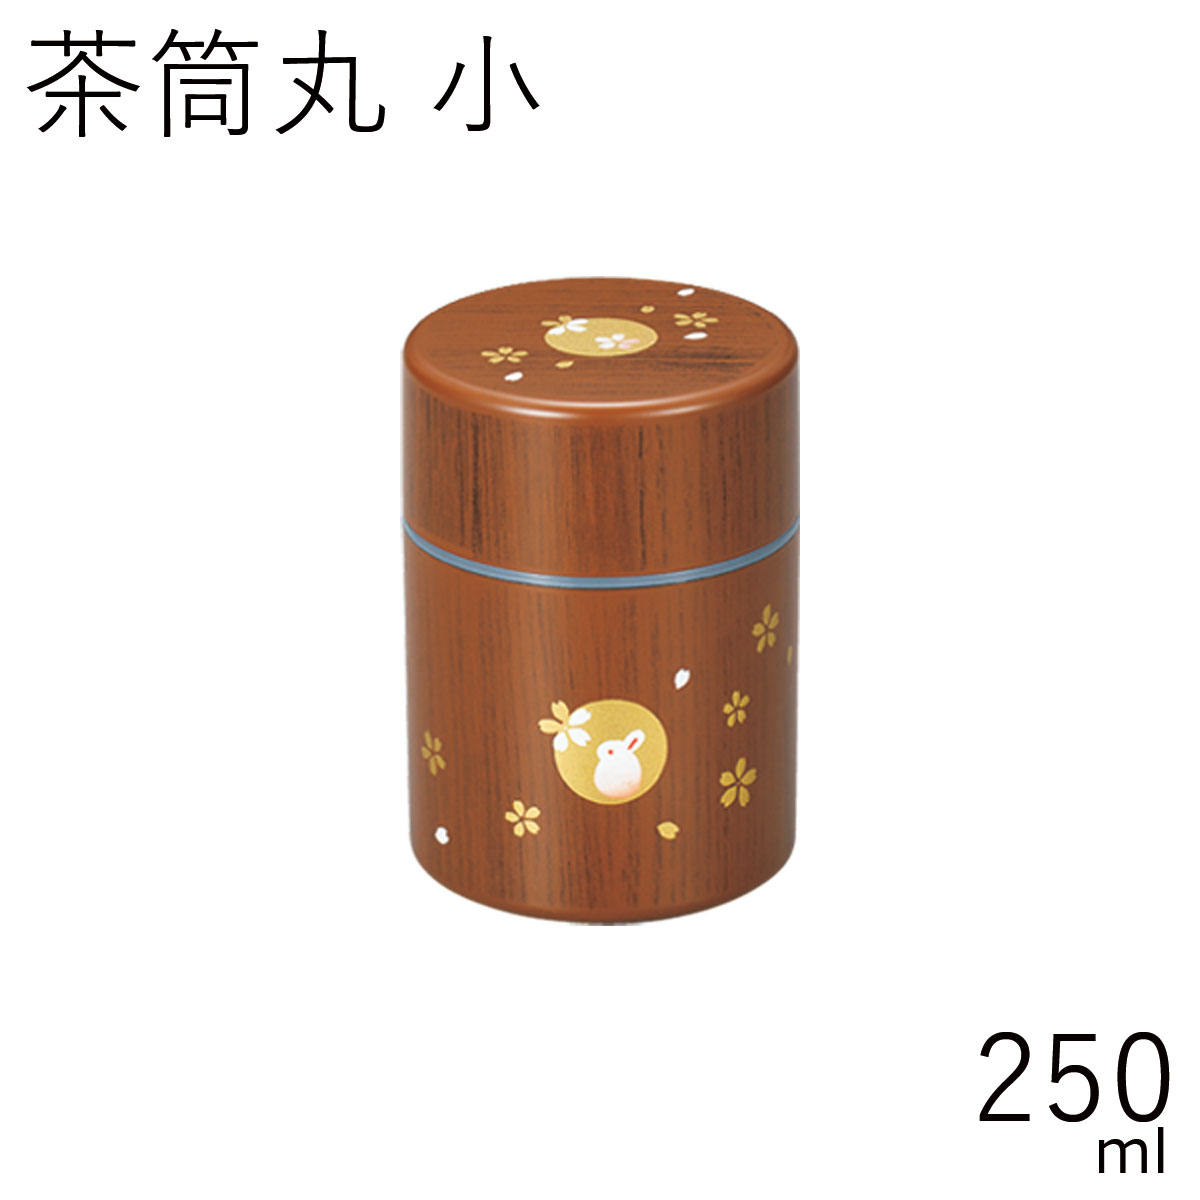 茶筒”HAKOYA 茶筒丸 小 250ml”木目ハンコうさぎ日本製茶器 日本茶 珈琲 コーヒー おしゃれ TEA CADDY